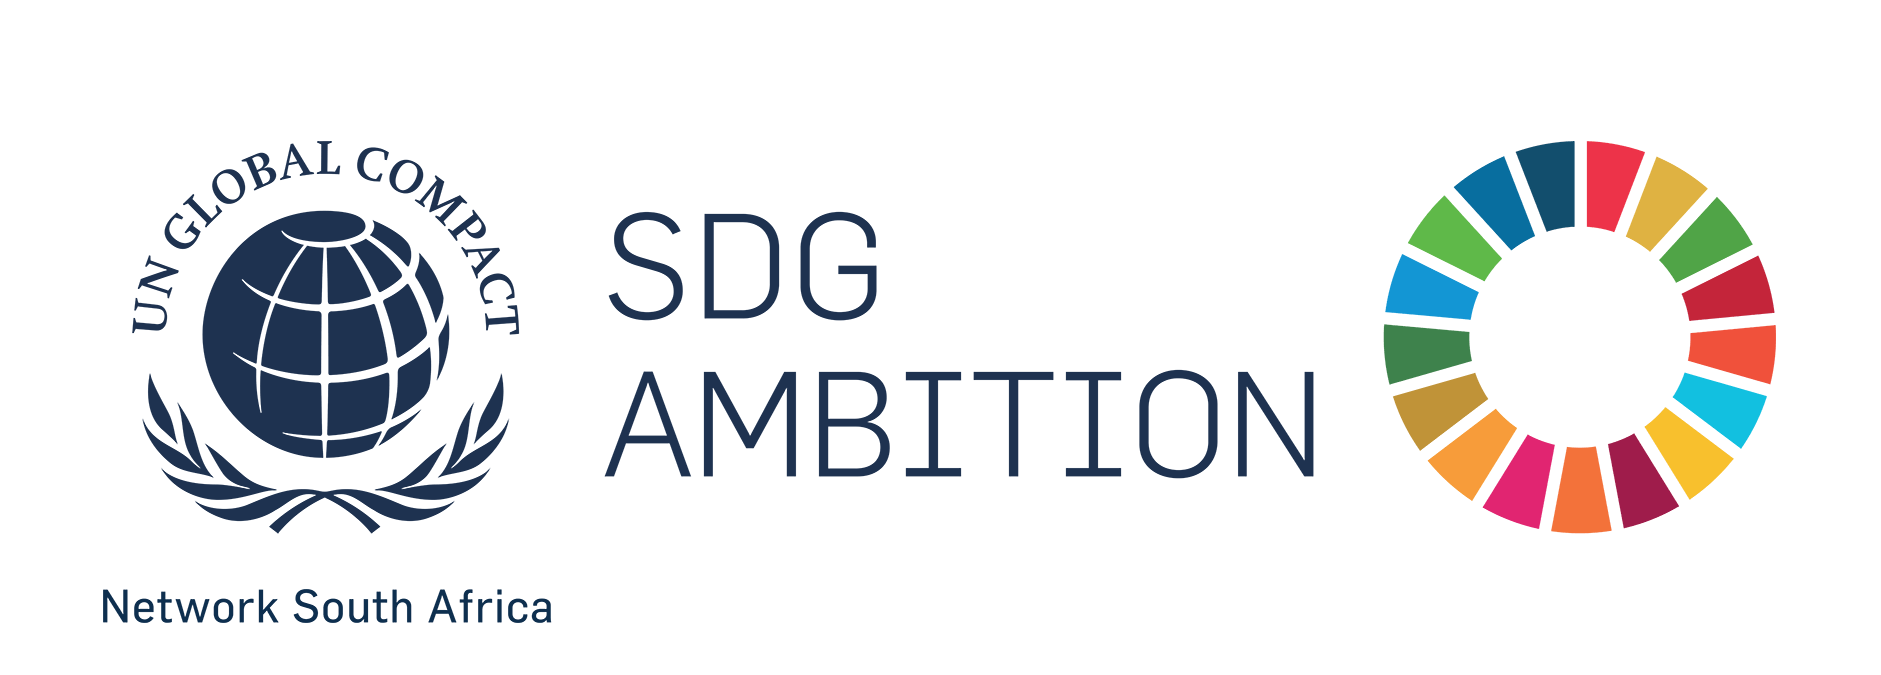 SDG Ambition programme 2020 - Global Compact Network SA